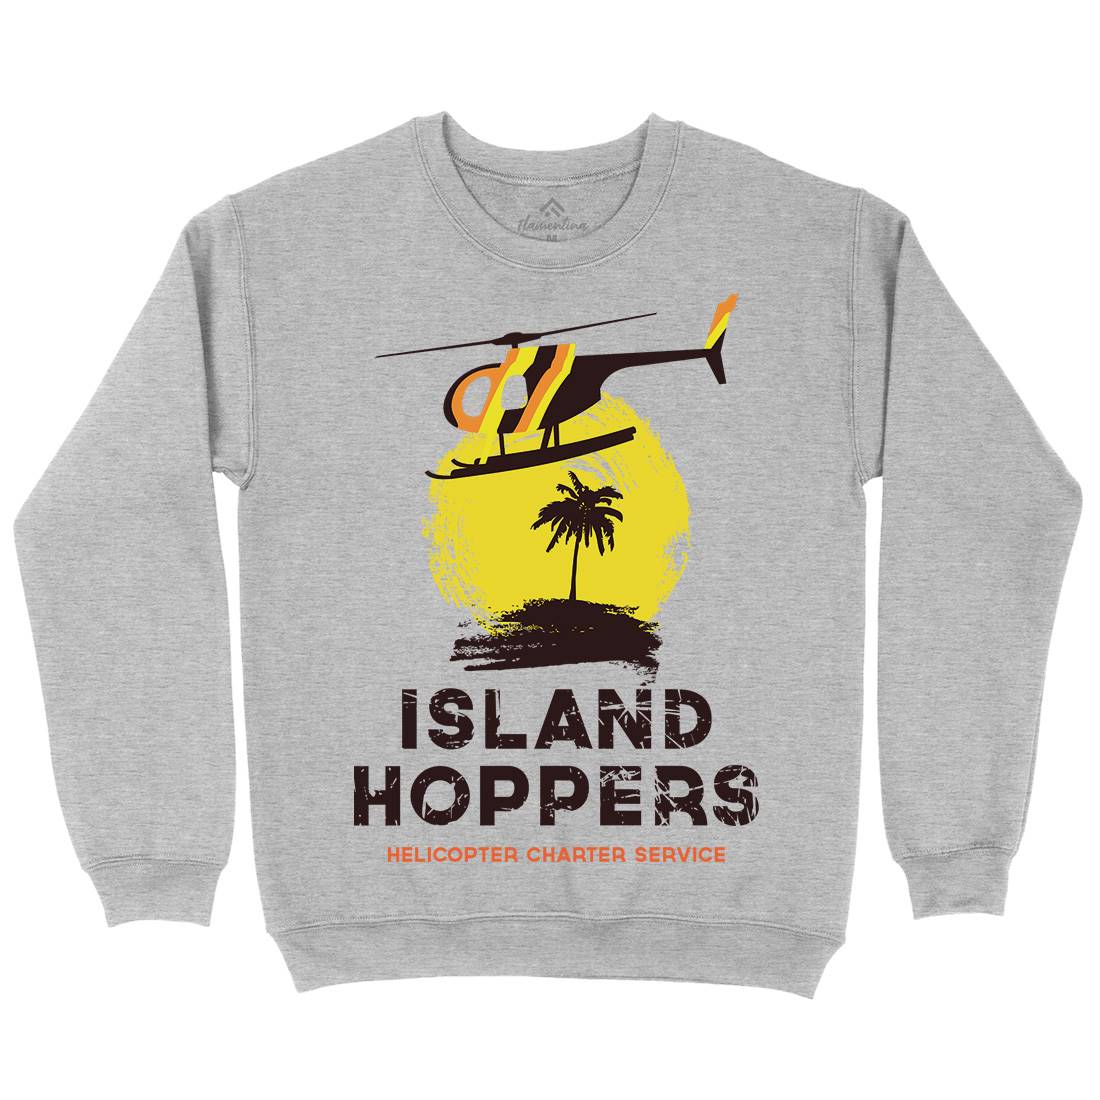 Island Hoppers Kids Crew Neck Sweatshirt Vehicles D117